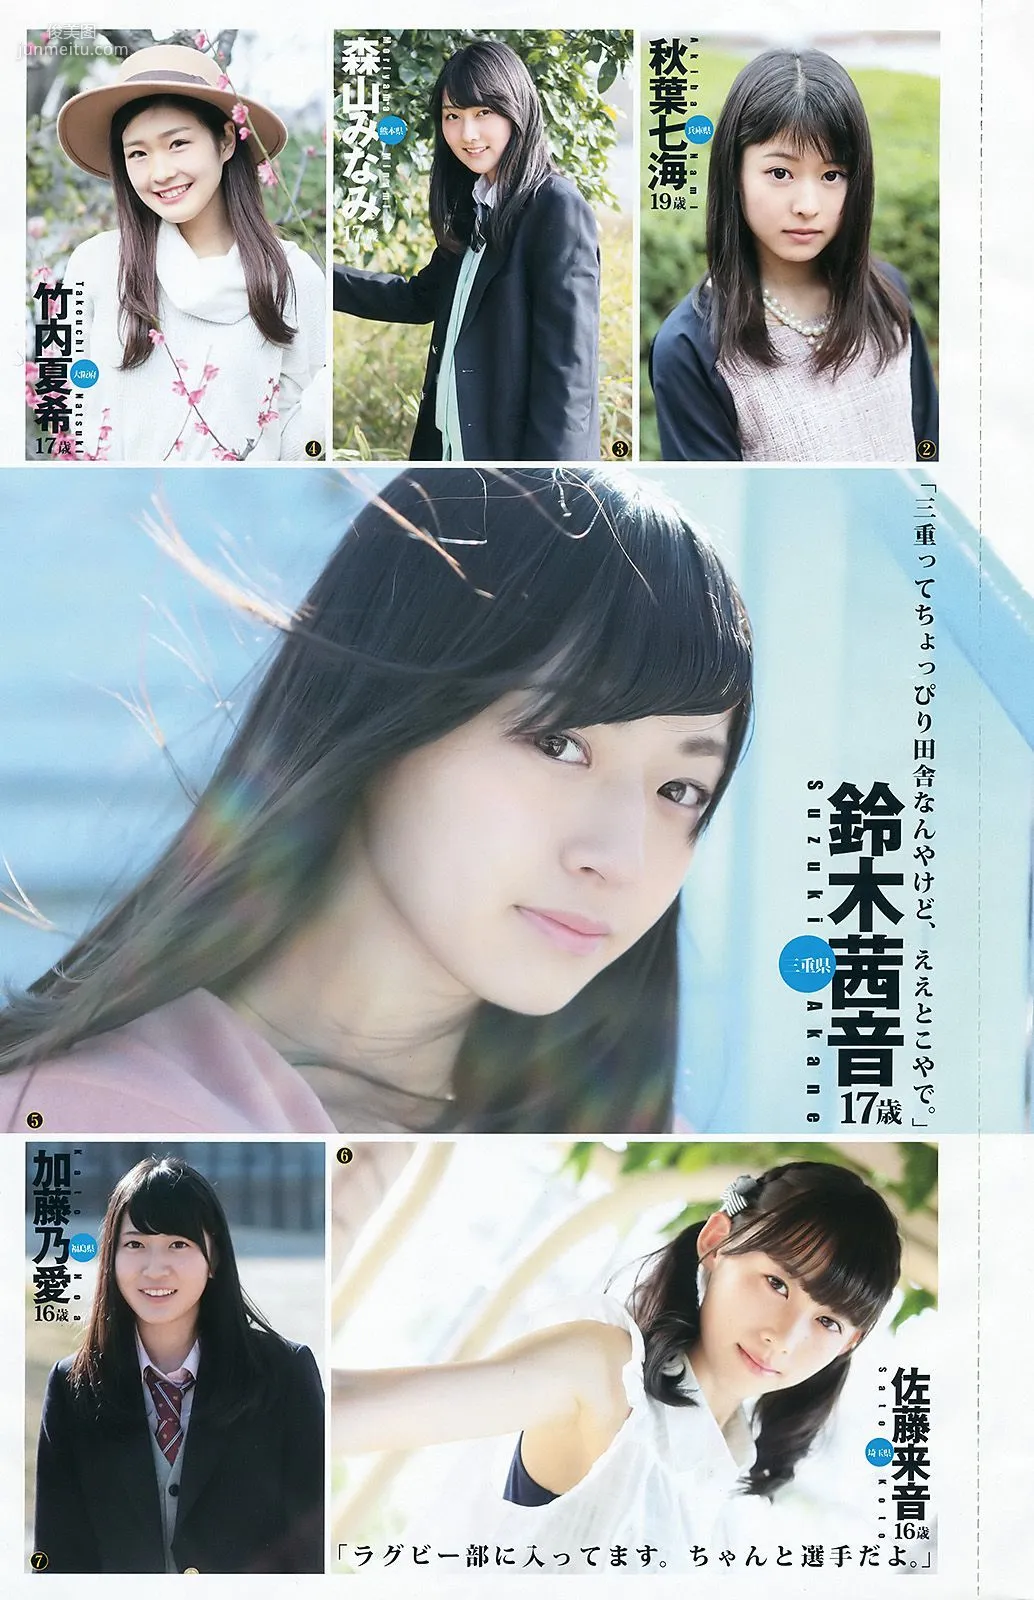 武田玲奈 全国美少女 mini BOOK [Weekly Young Jump週刊ヤングジャンプ] 2016年No.37-38写真杂志16